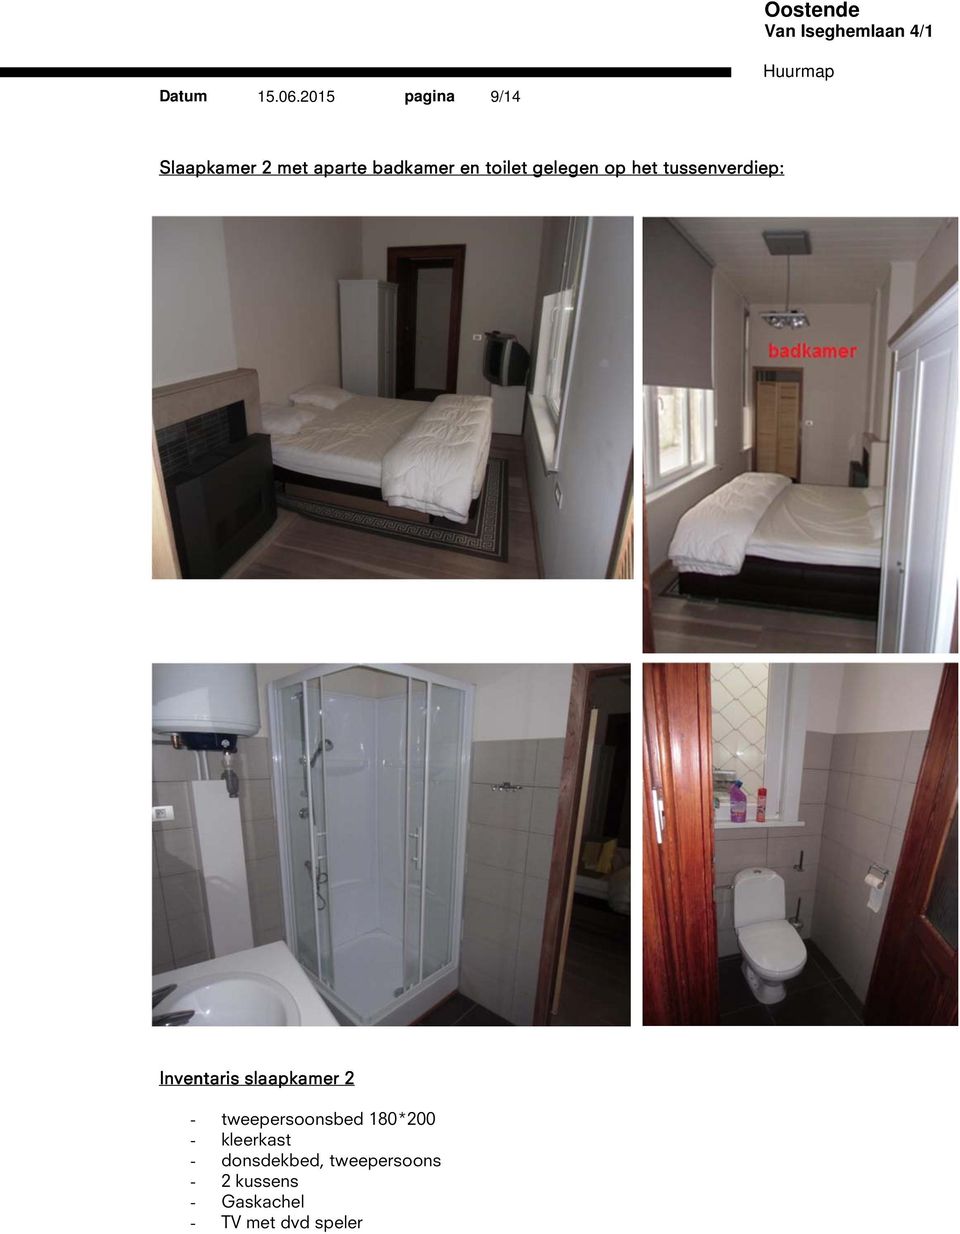 toilet gelegen op het tussenverdiep: Inventaris slaapkamer